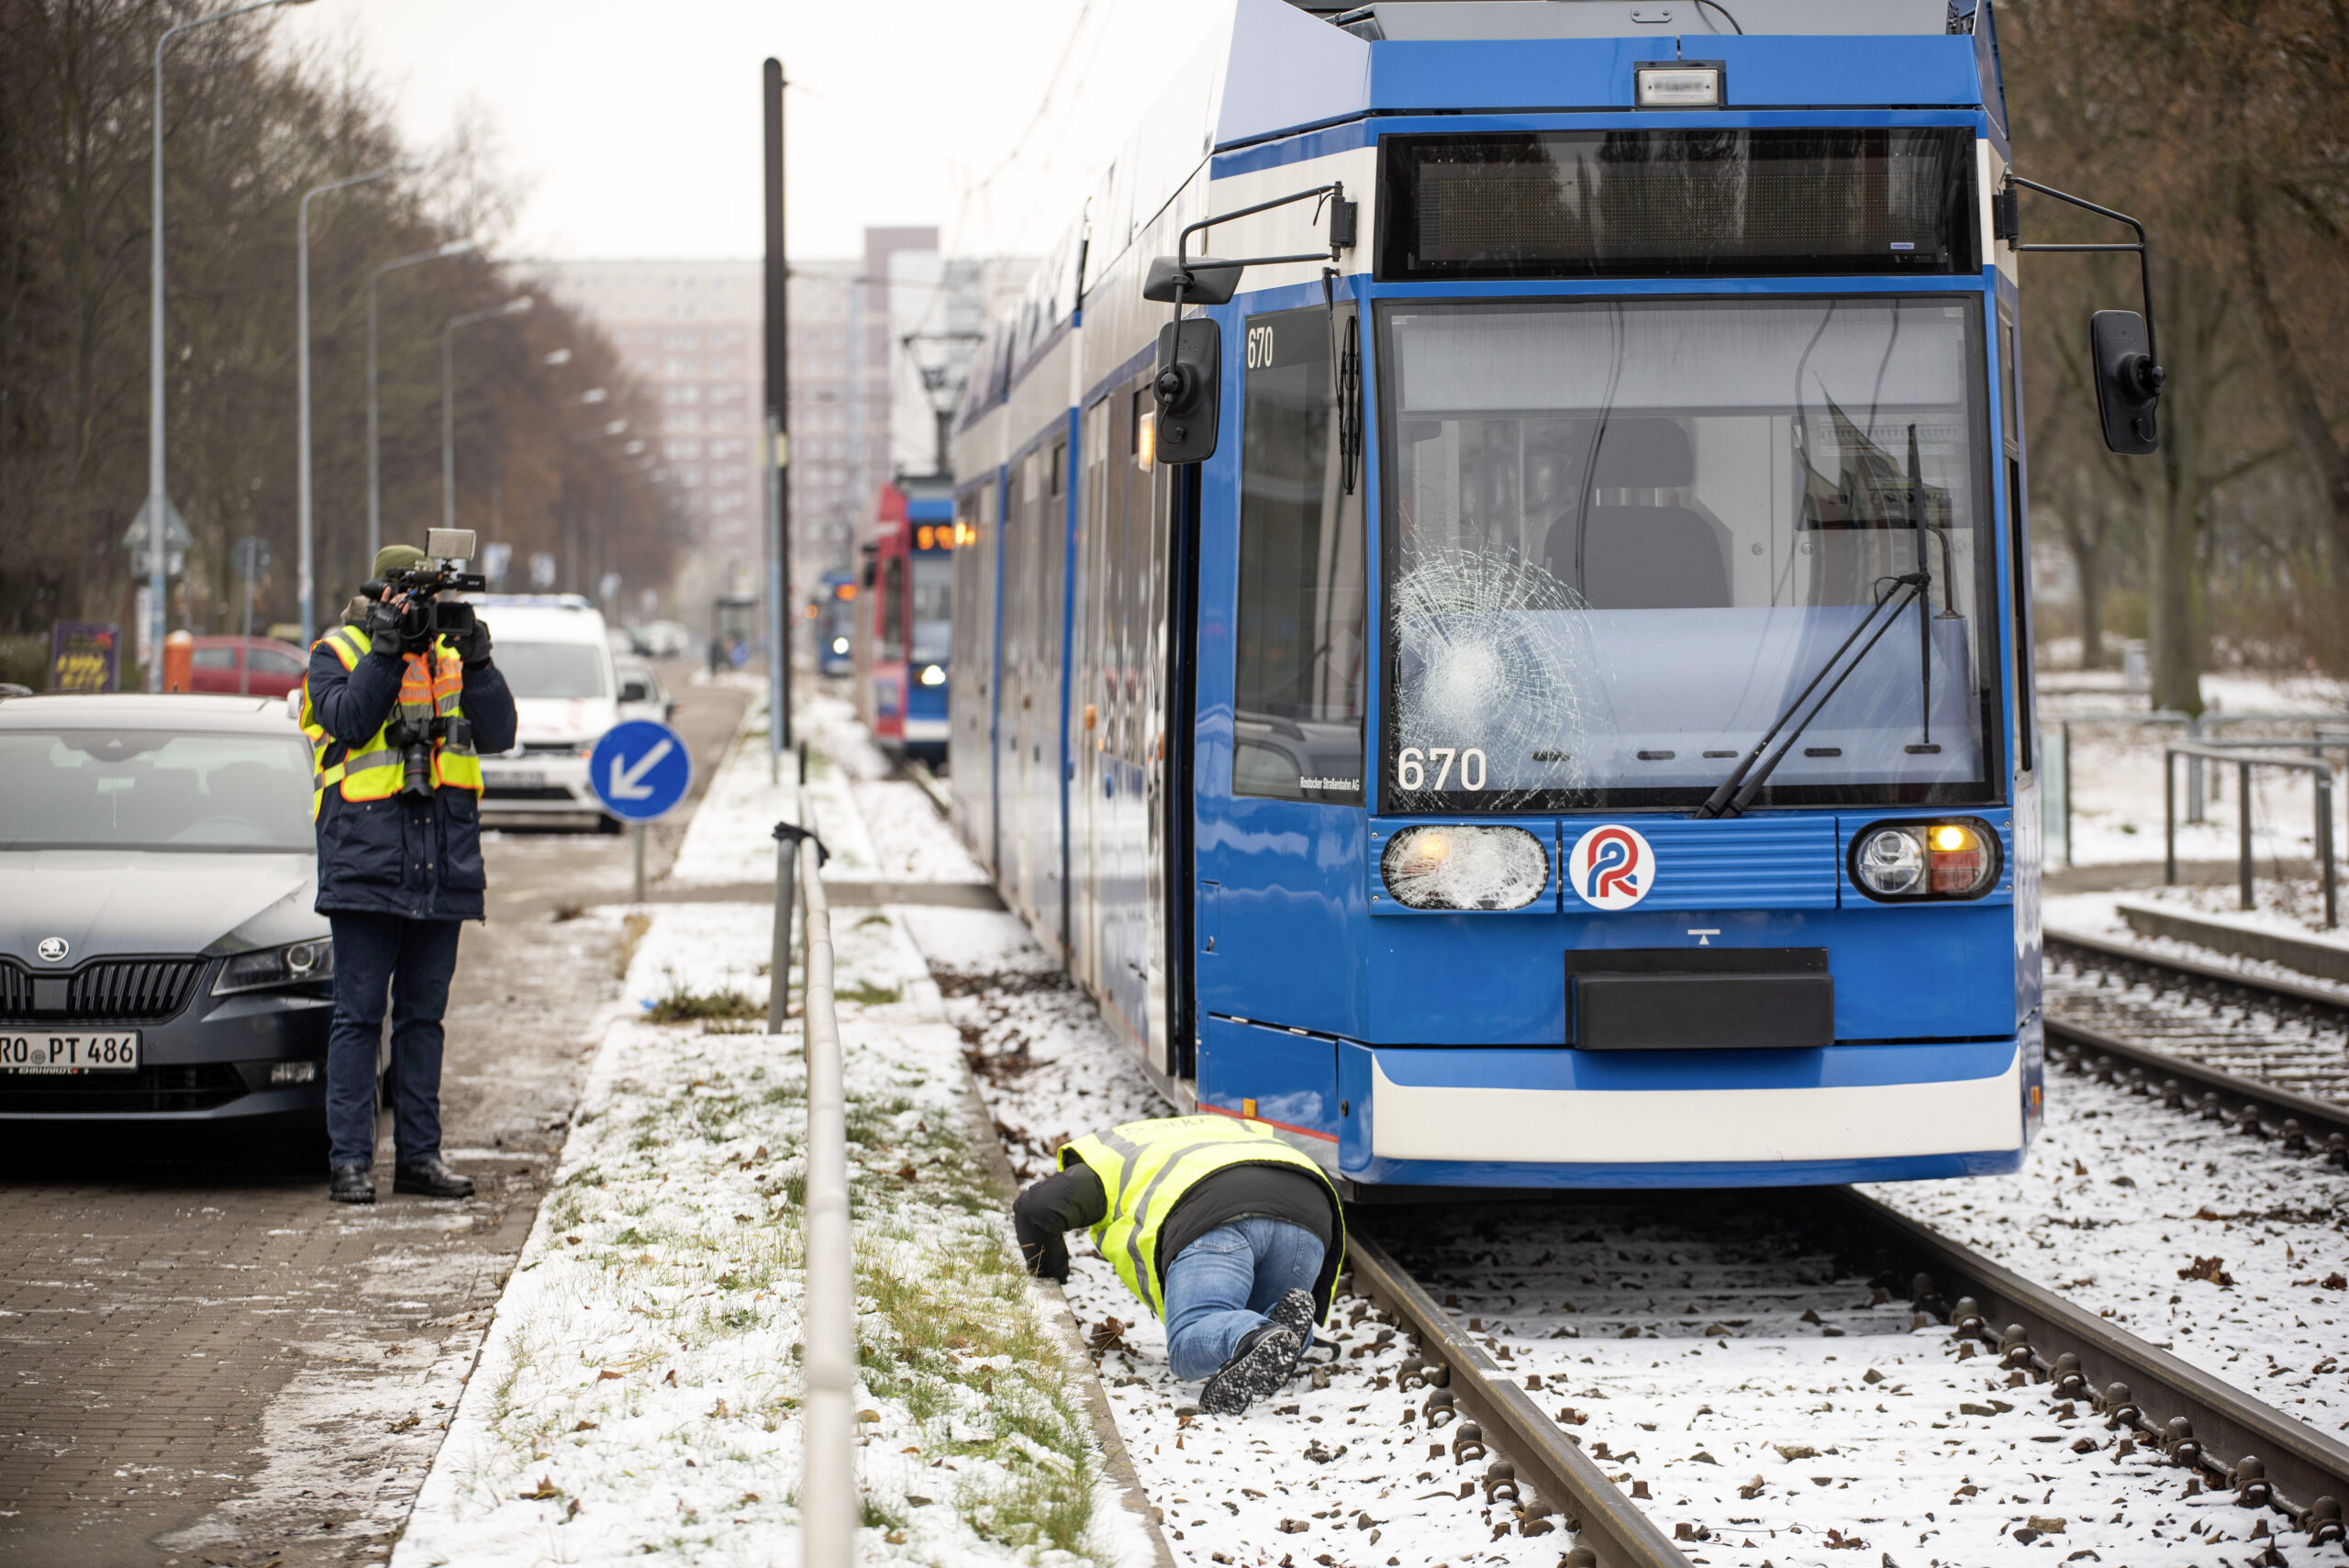 Sachverständige untersuchen die Straßenbahn in Rostock, die eine 85 Jahre alte Frau tödlich erfasst hat.